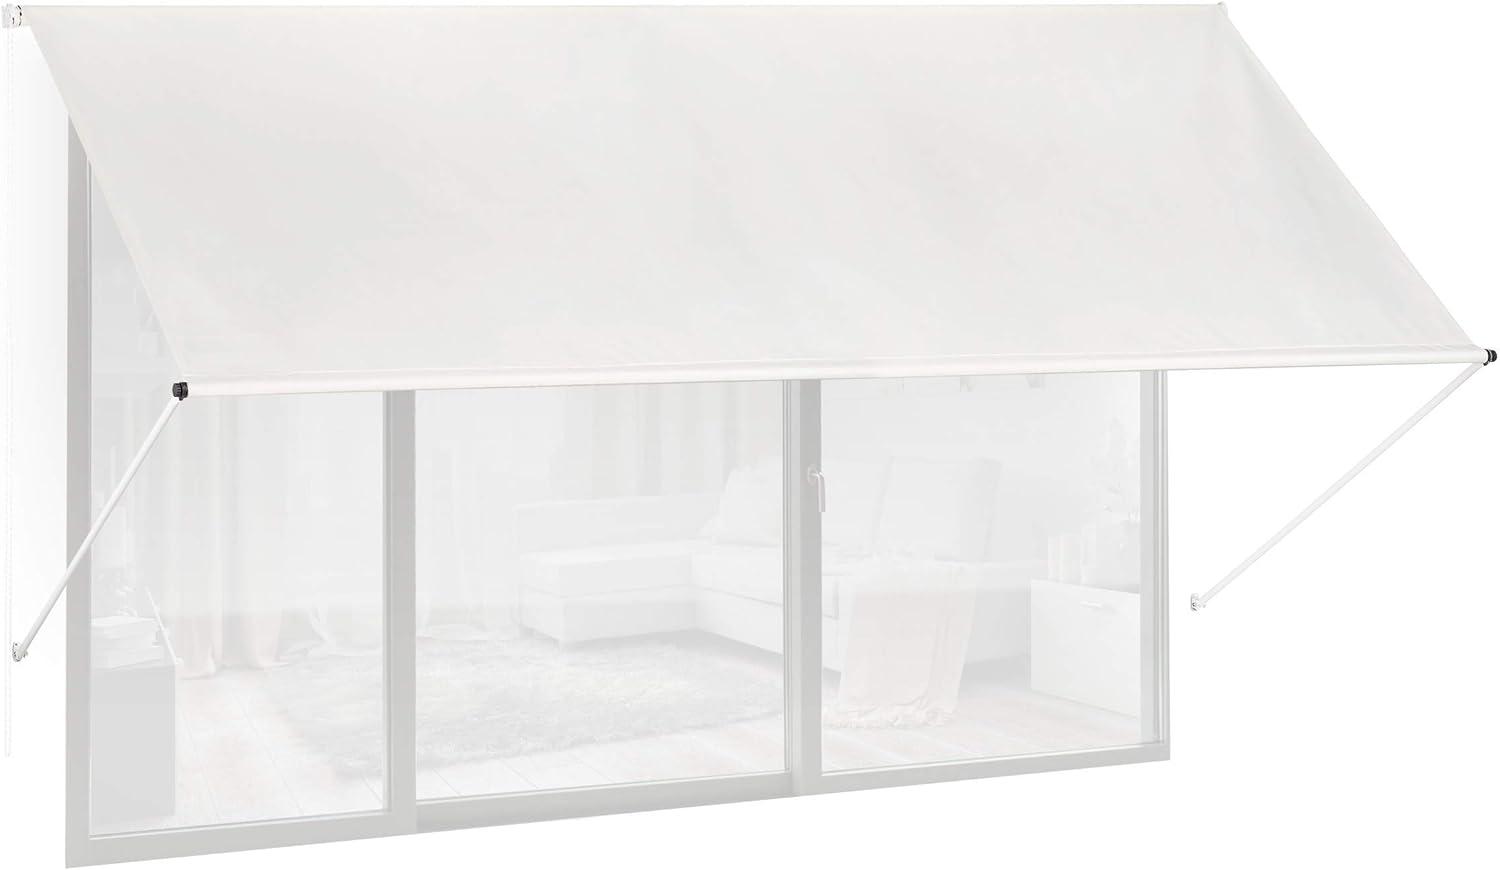 Fallarmmarkise HxB: 120x300 cm, Schattenspender für Fenster, 50+ UV-Schutz, Seilzug, Polyester & Metall, beige Bild 1